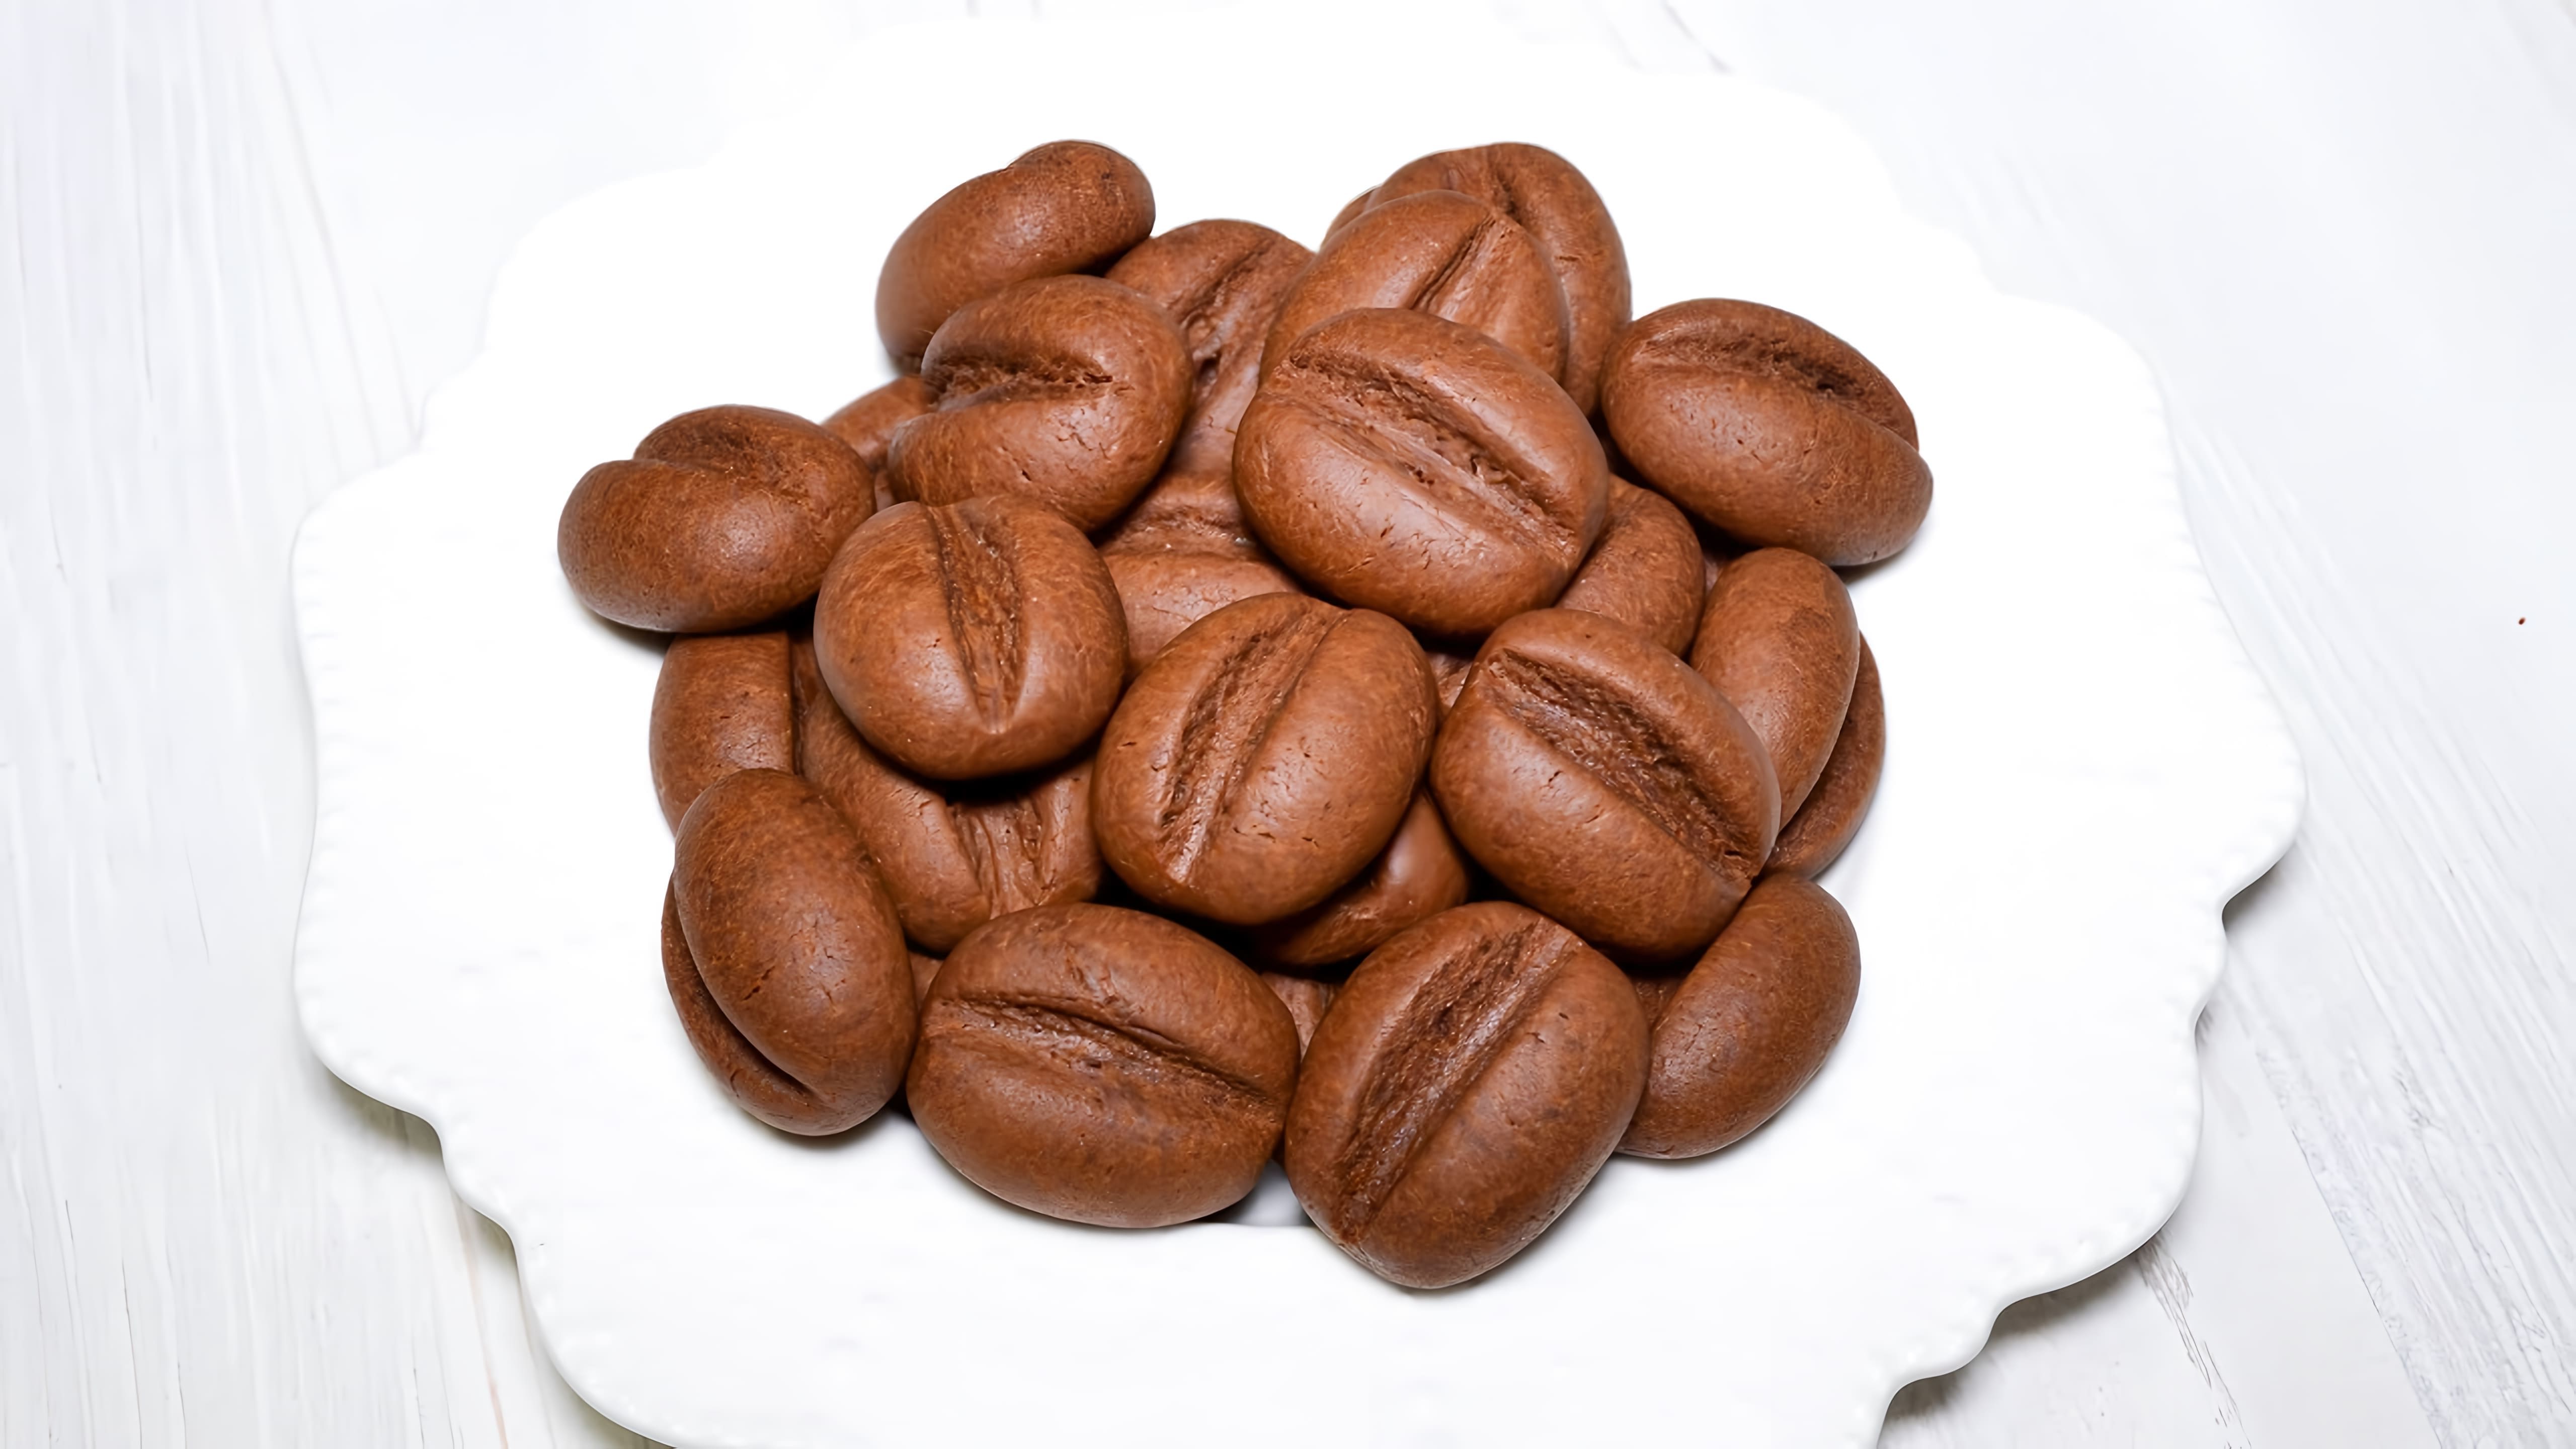 В этом видео демонстрируется процесс приготовления оригинального печенья с ярким шоколадно-кофейным вкусом, напоминающим кофейные зерна